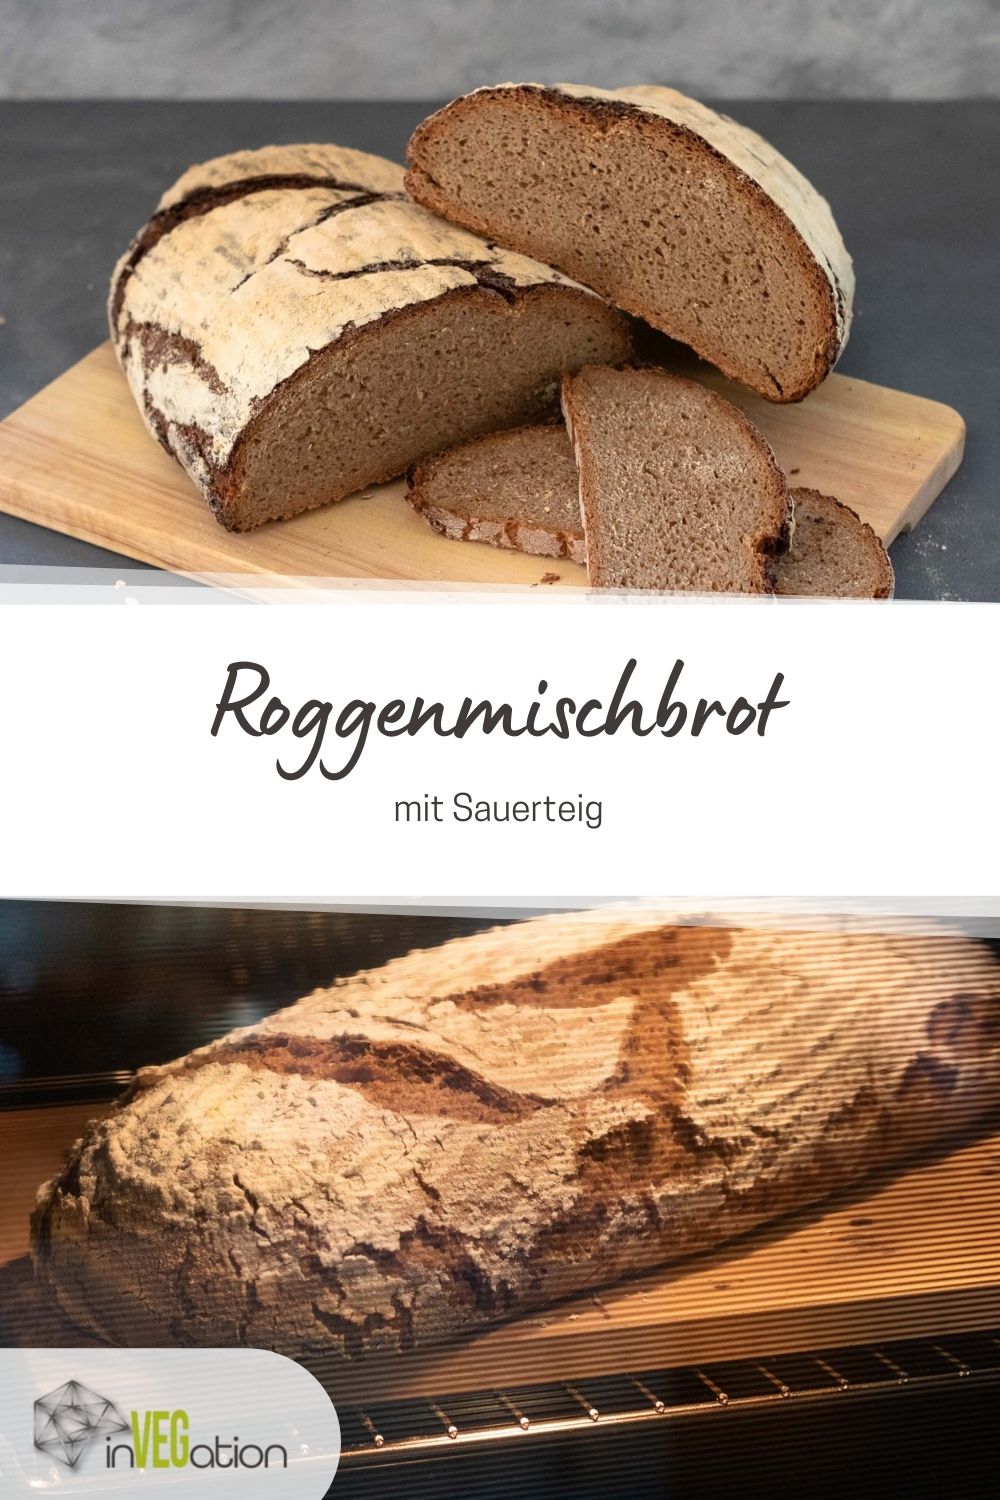 Roggenmischbrot mit Sauerteig - wie vom Bäcker! | invegation.de